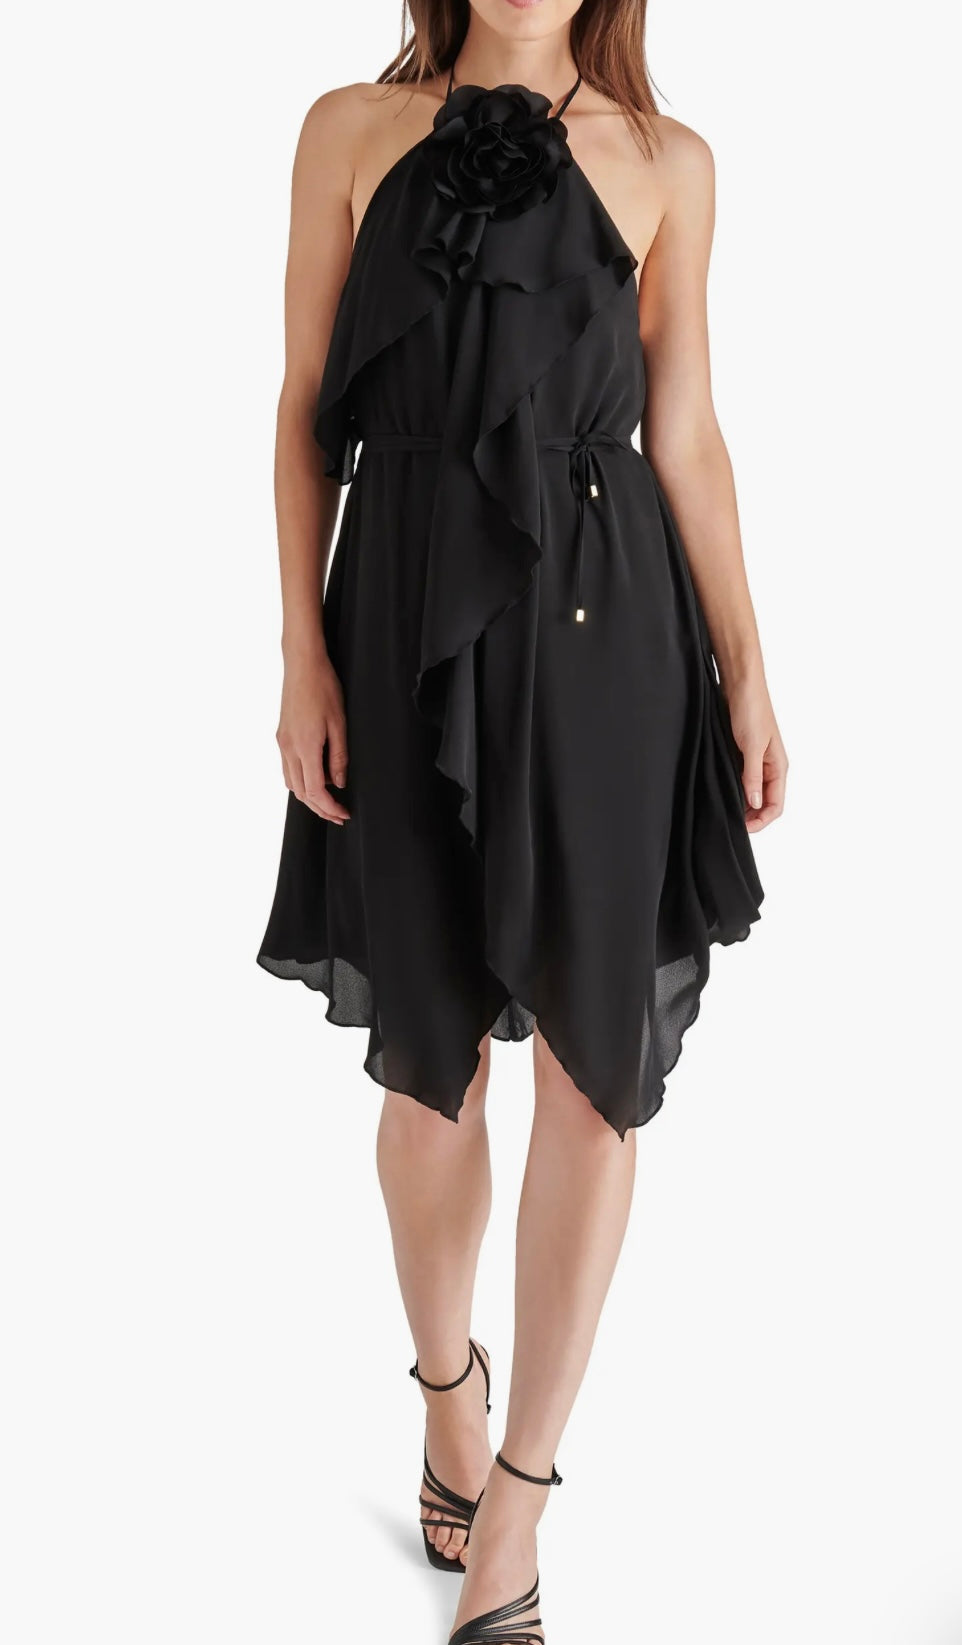 Rosette Midi Dress in black by Steve Madden